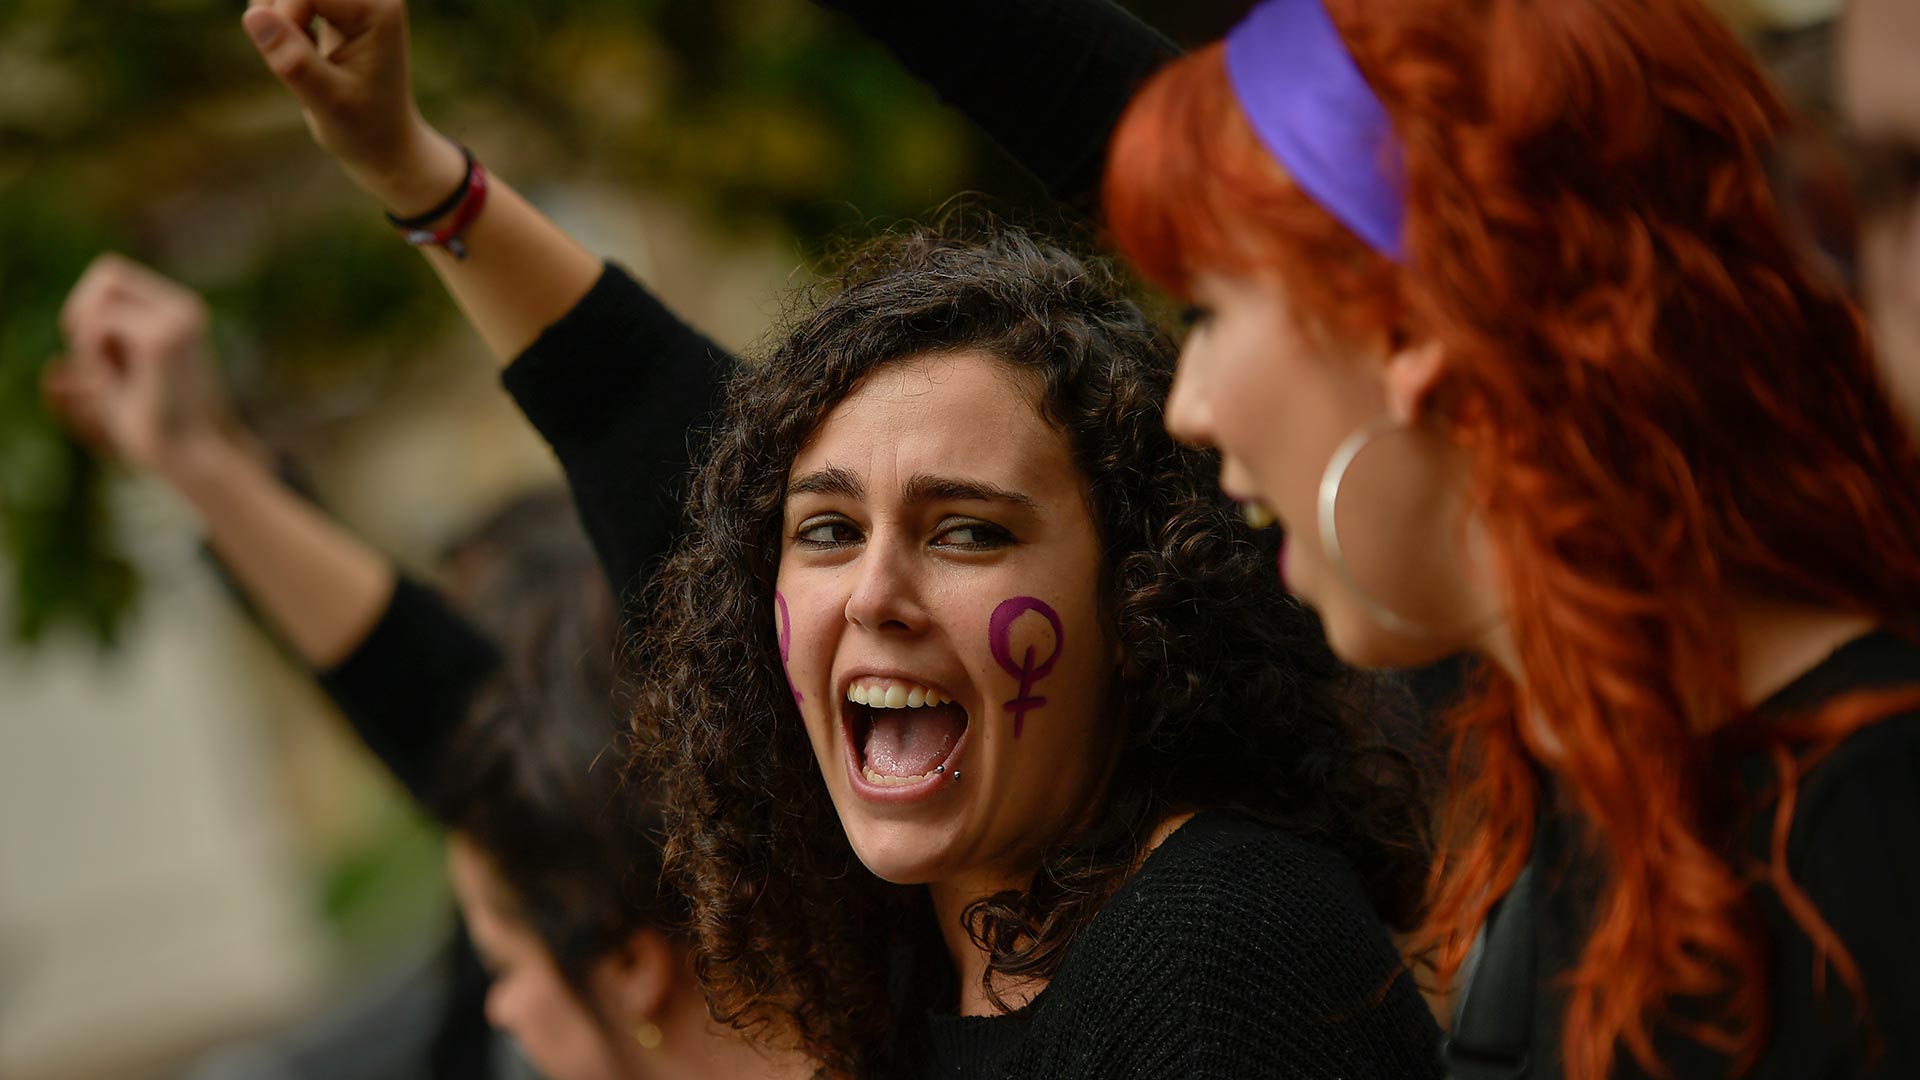 #NoSinMujeres, los académicos españoles dicen basta a los eventos sin expertas